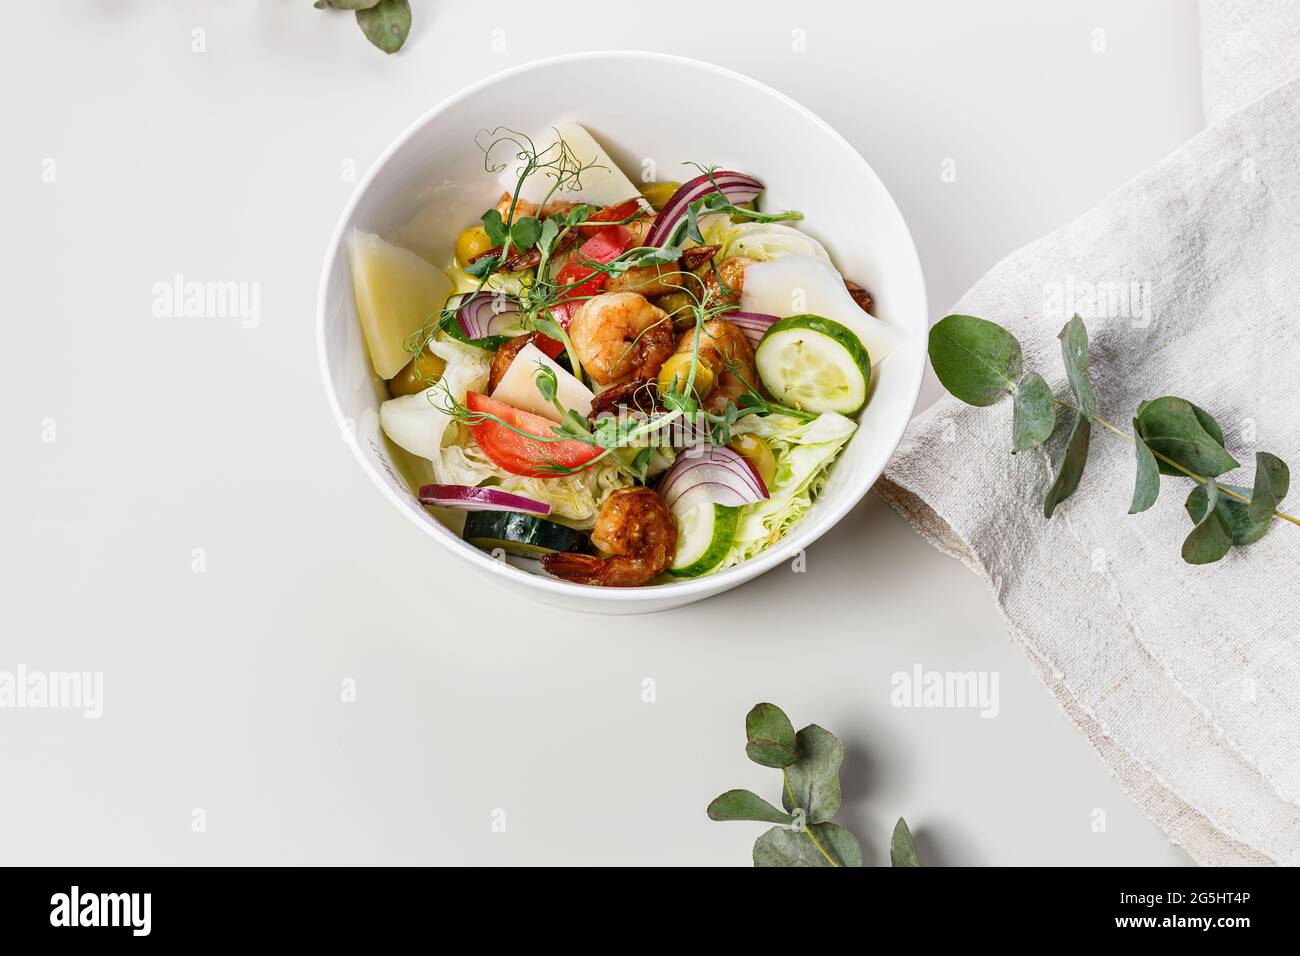 Salade d'été en gros plan avec légumes frais et fruits de mer sur fond blanc. Légumes de saison, crevettes et fromage de chèvre. Mediterr. Santé Banque D'Images